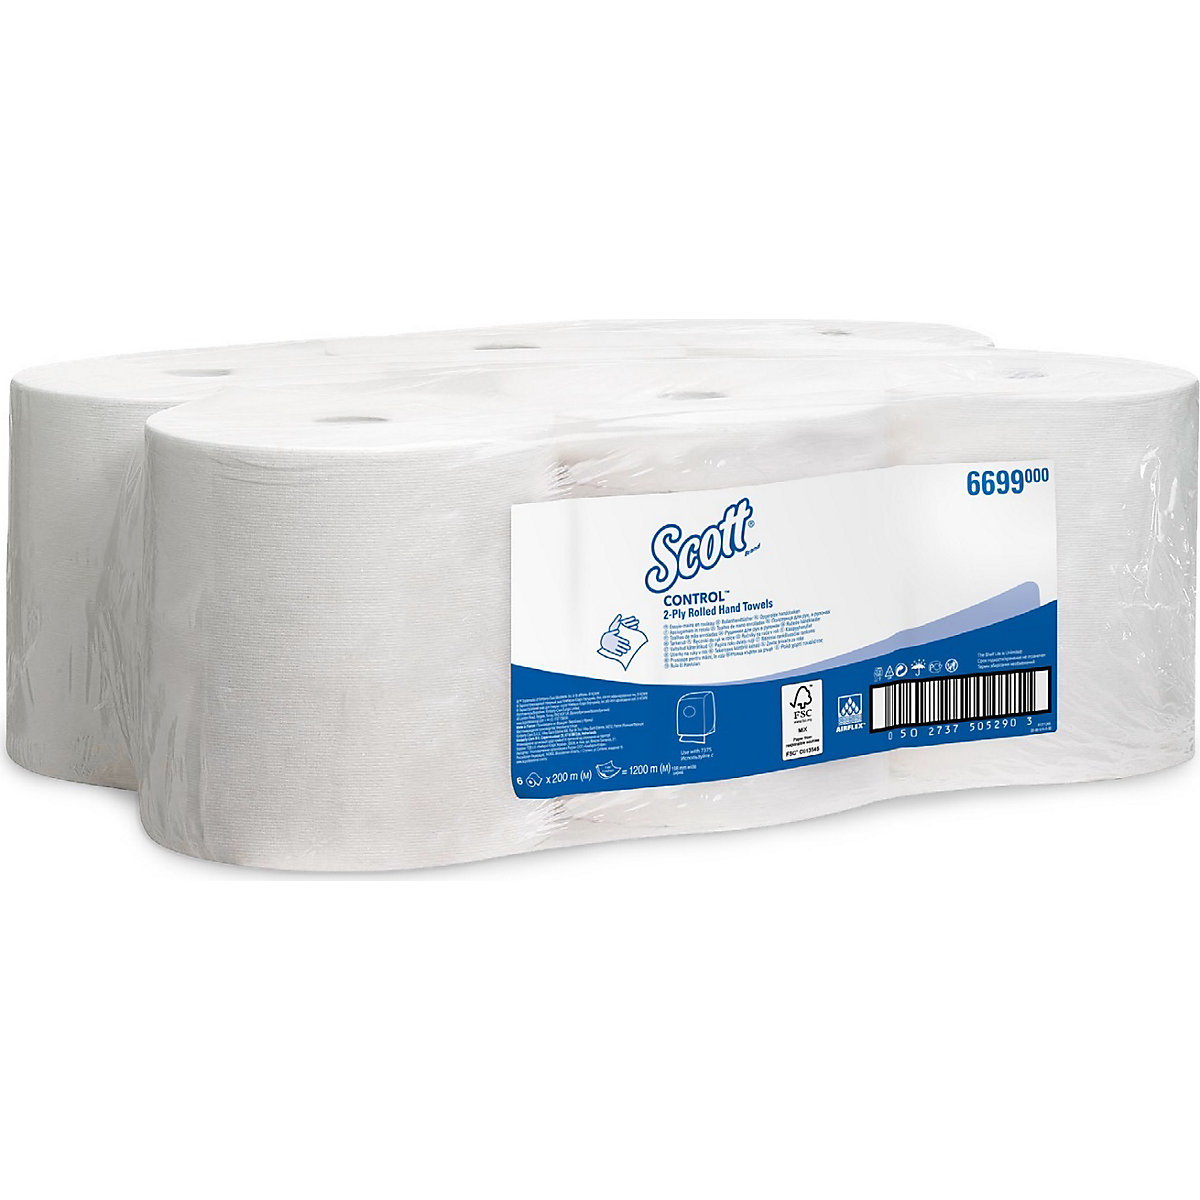 Scott® CONTROL™ Papierhandtücher Kimberly-Clark